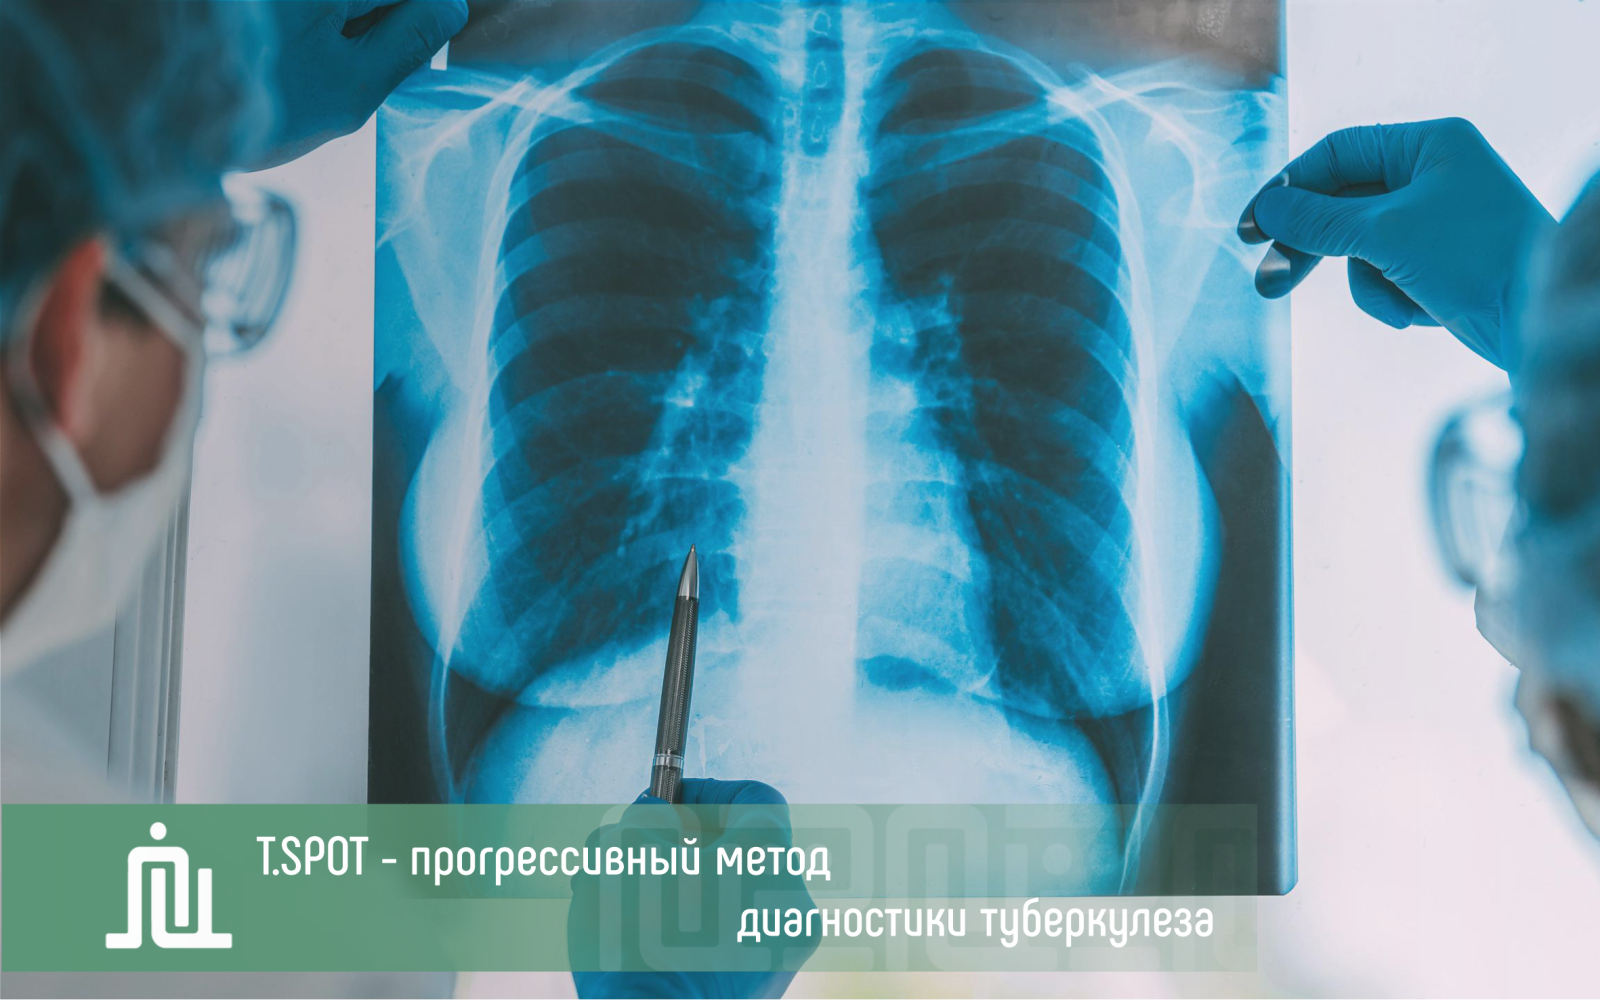 T.SPOT - прогрессивный метод диагностики туберкулеза